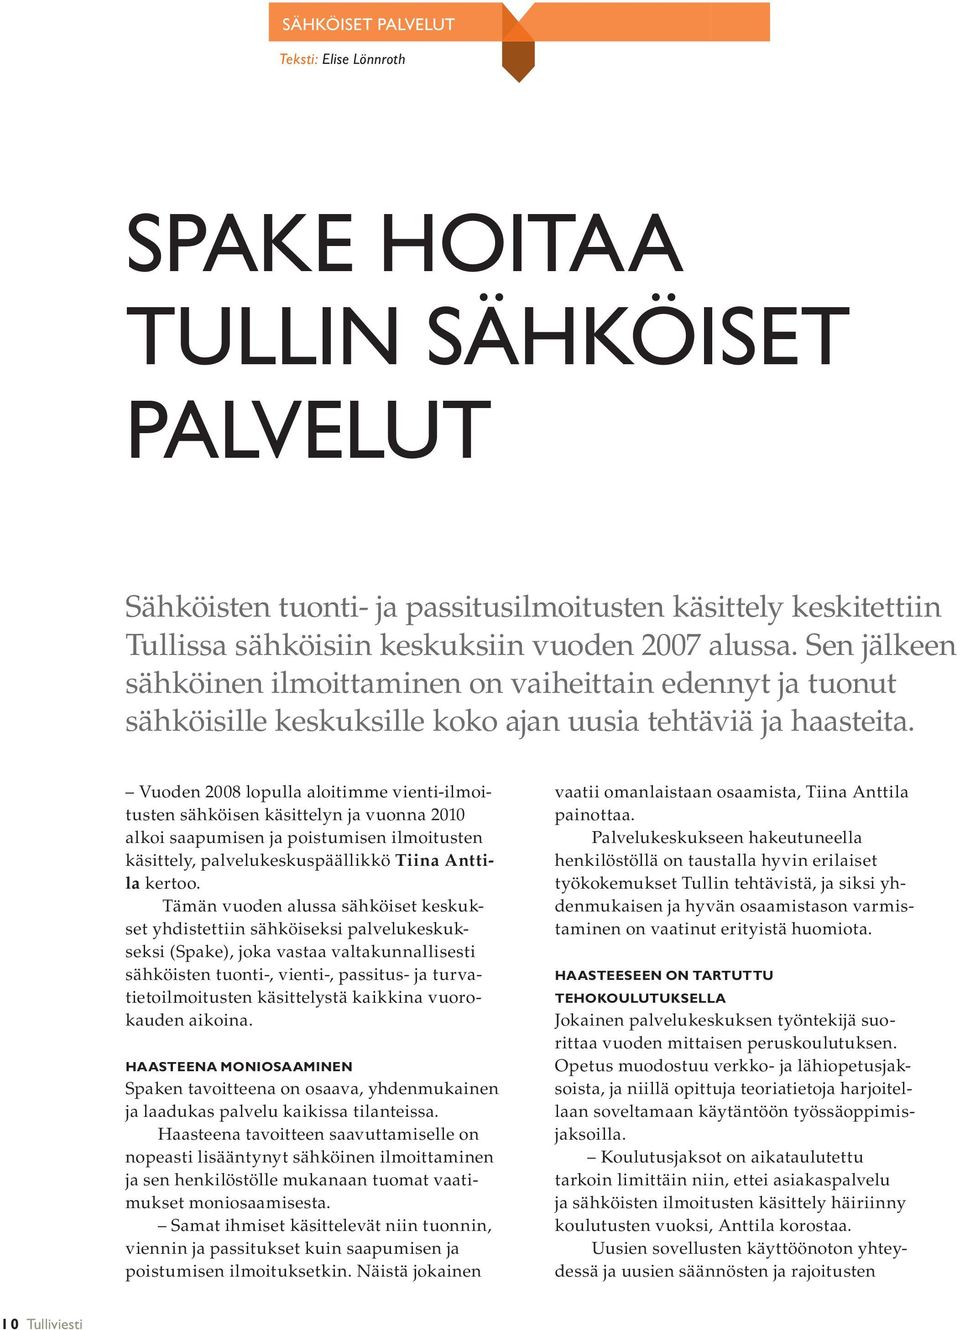 Vuoden 2008 lopulla aloitimme vienti-ilmoitusten sähköisen käsittelyn ja vuonna 2010 alkoi saapumisen ja poistumisen ilmoitusten käsittely, palvelukeskuspäällikkö Tiina Anttila kertoo.